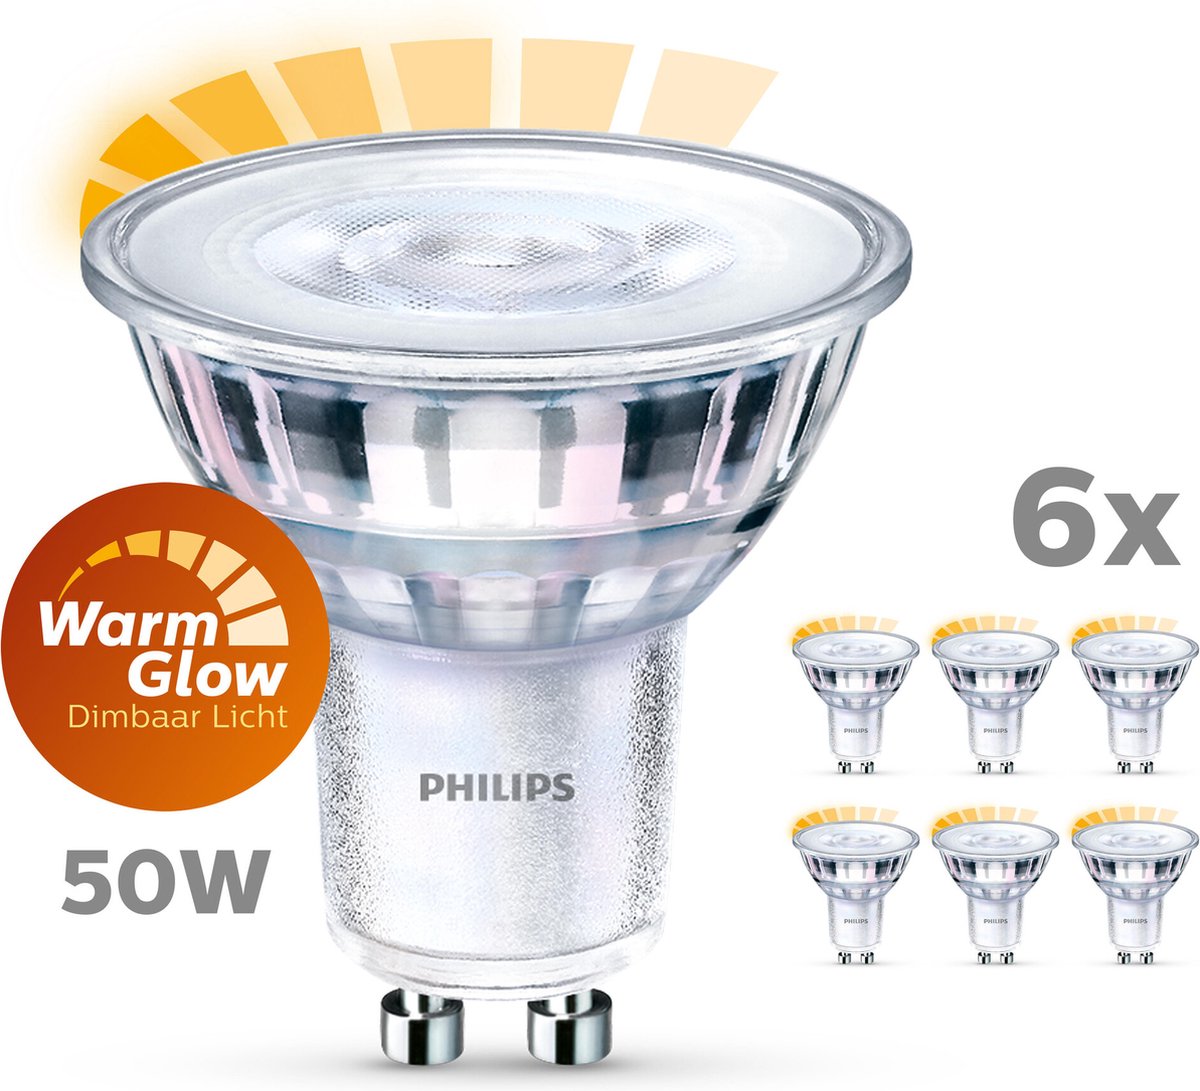 Specimen Kwadrant rechtdoor Philips energiezuinige LED Spot - 50 W - GU10 - Dimbaar warmwit licht - 6  stuks | bol.com